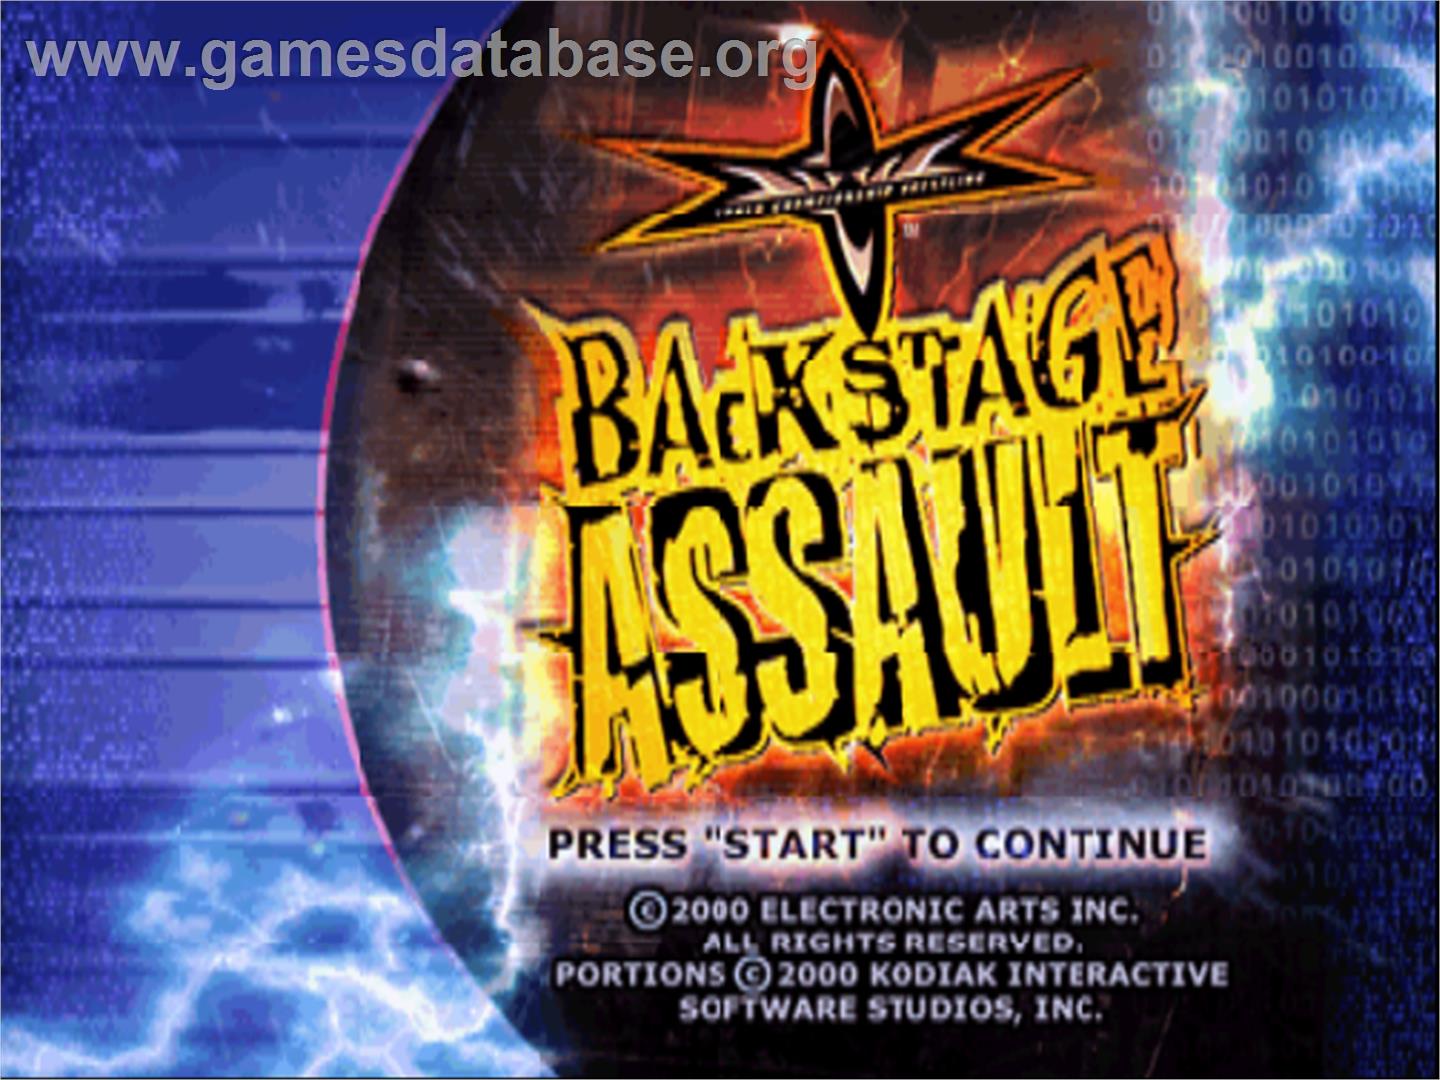 WCW Backstage Assault - Nintendo N64 - Artwork - Title Screen